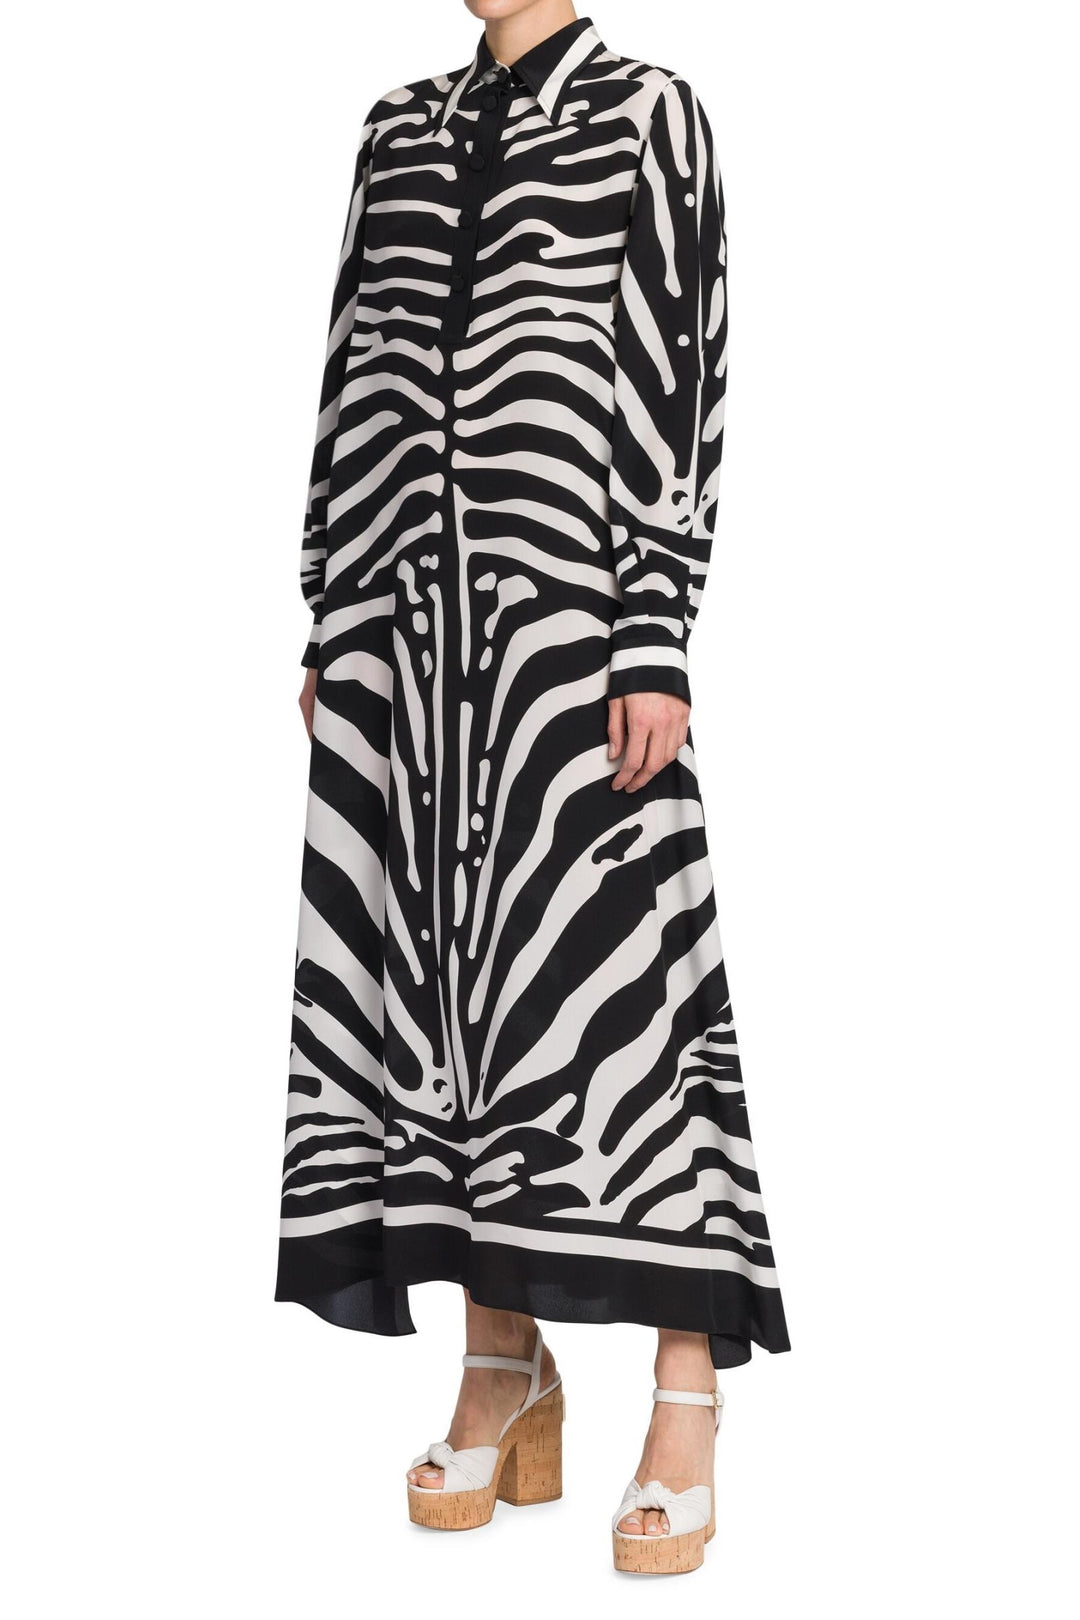 Striped Zebra Dress